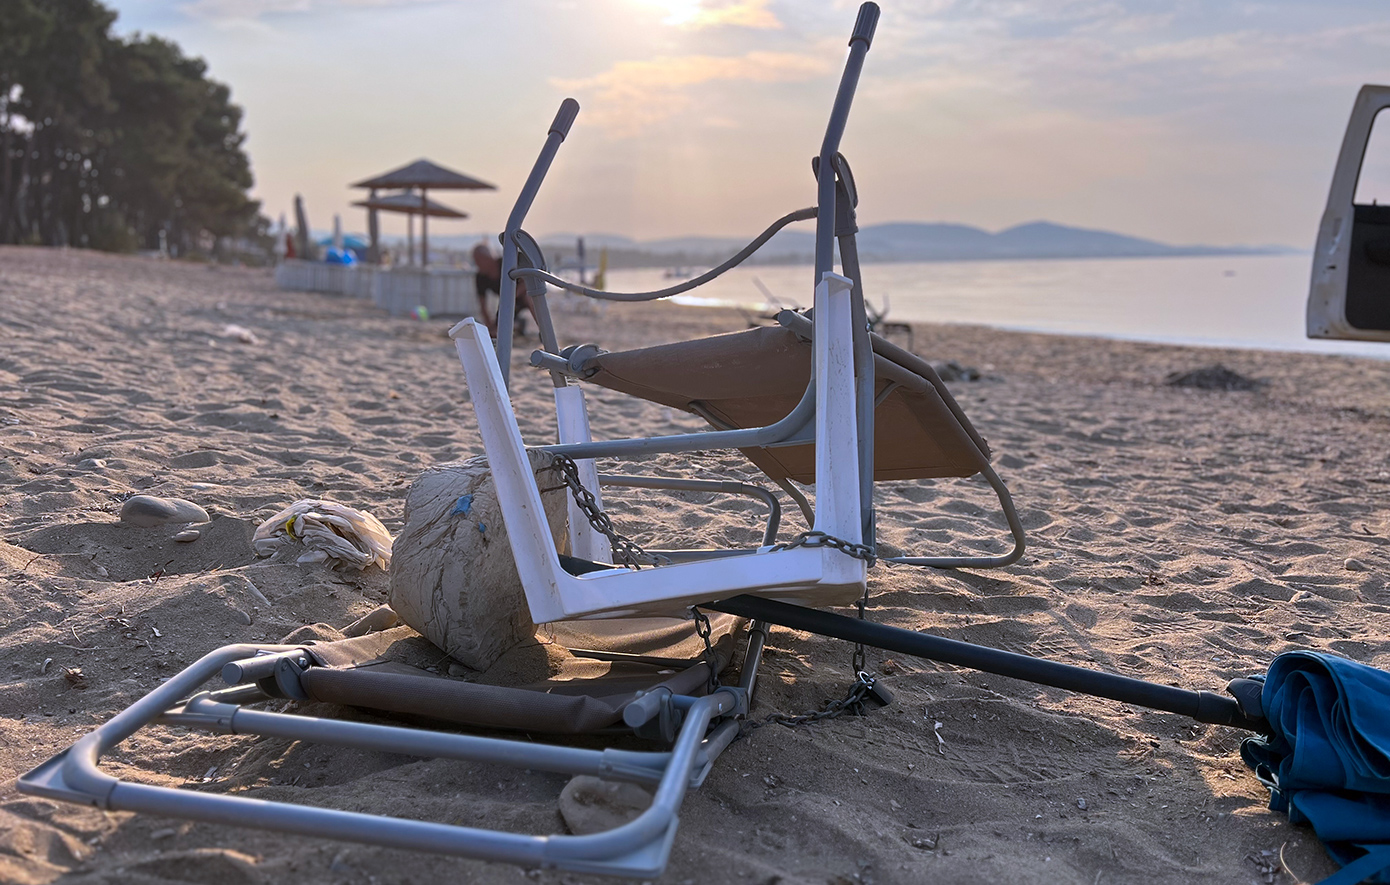 Ξαπλώστρες και ομπρέλες απομάκρυναν συνεργεία του δήμου Πολυγύρου από την παραλία των Καλυβών